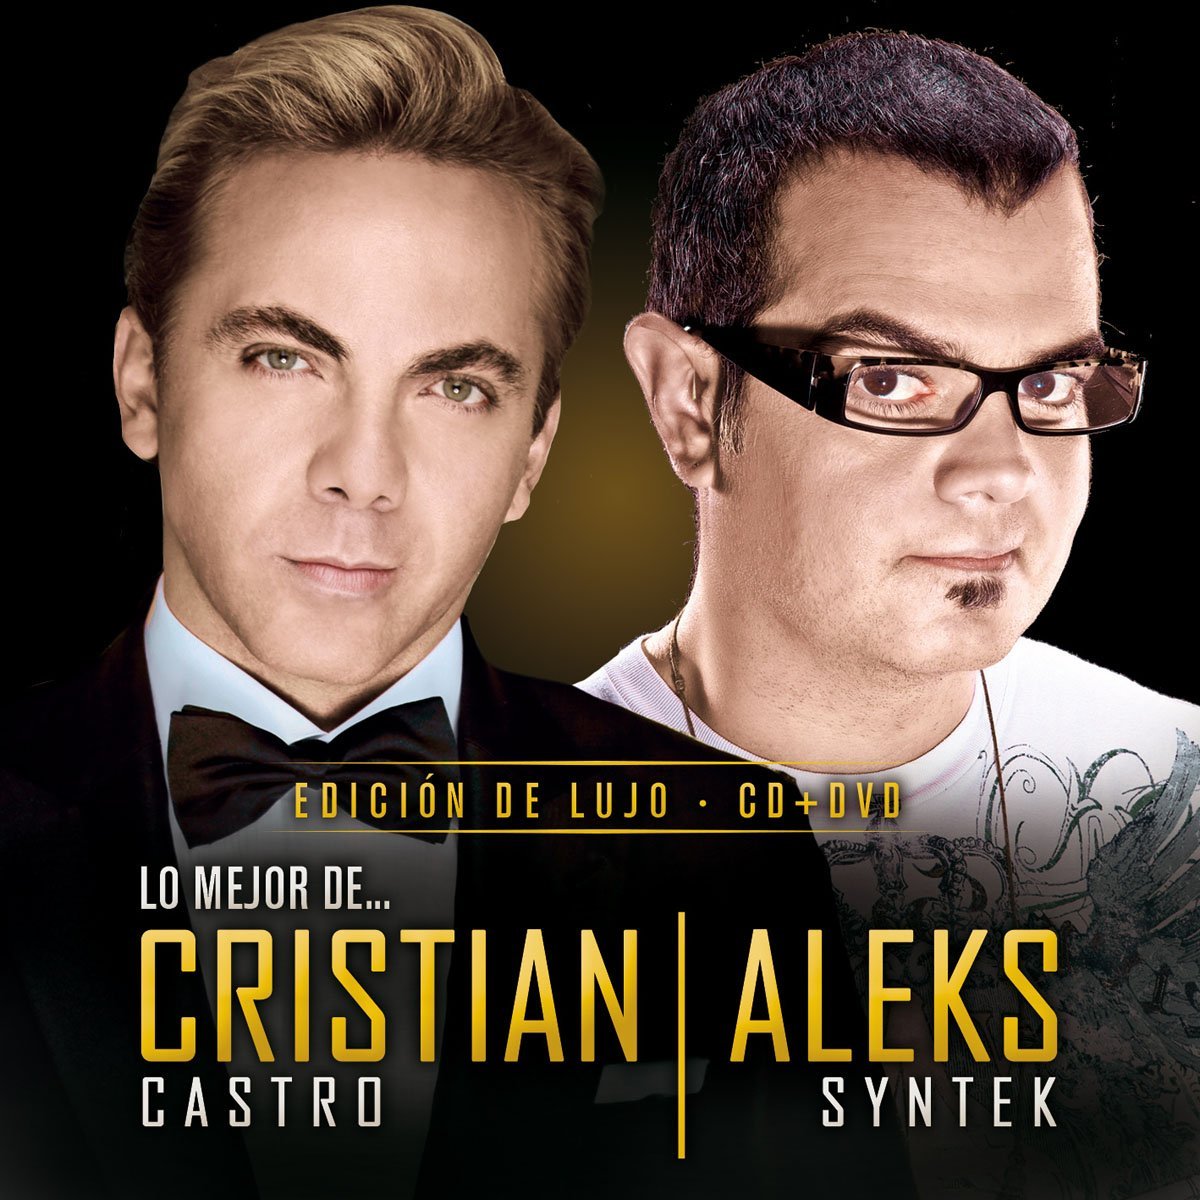 Cristian Castro, Aleks Syntek lo Mejor de Cristian Castro y Aleks Syntek